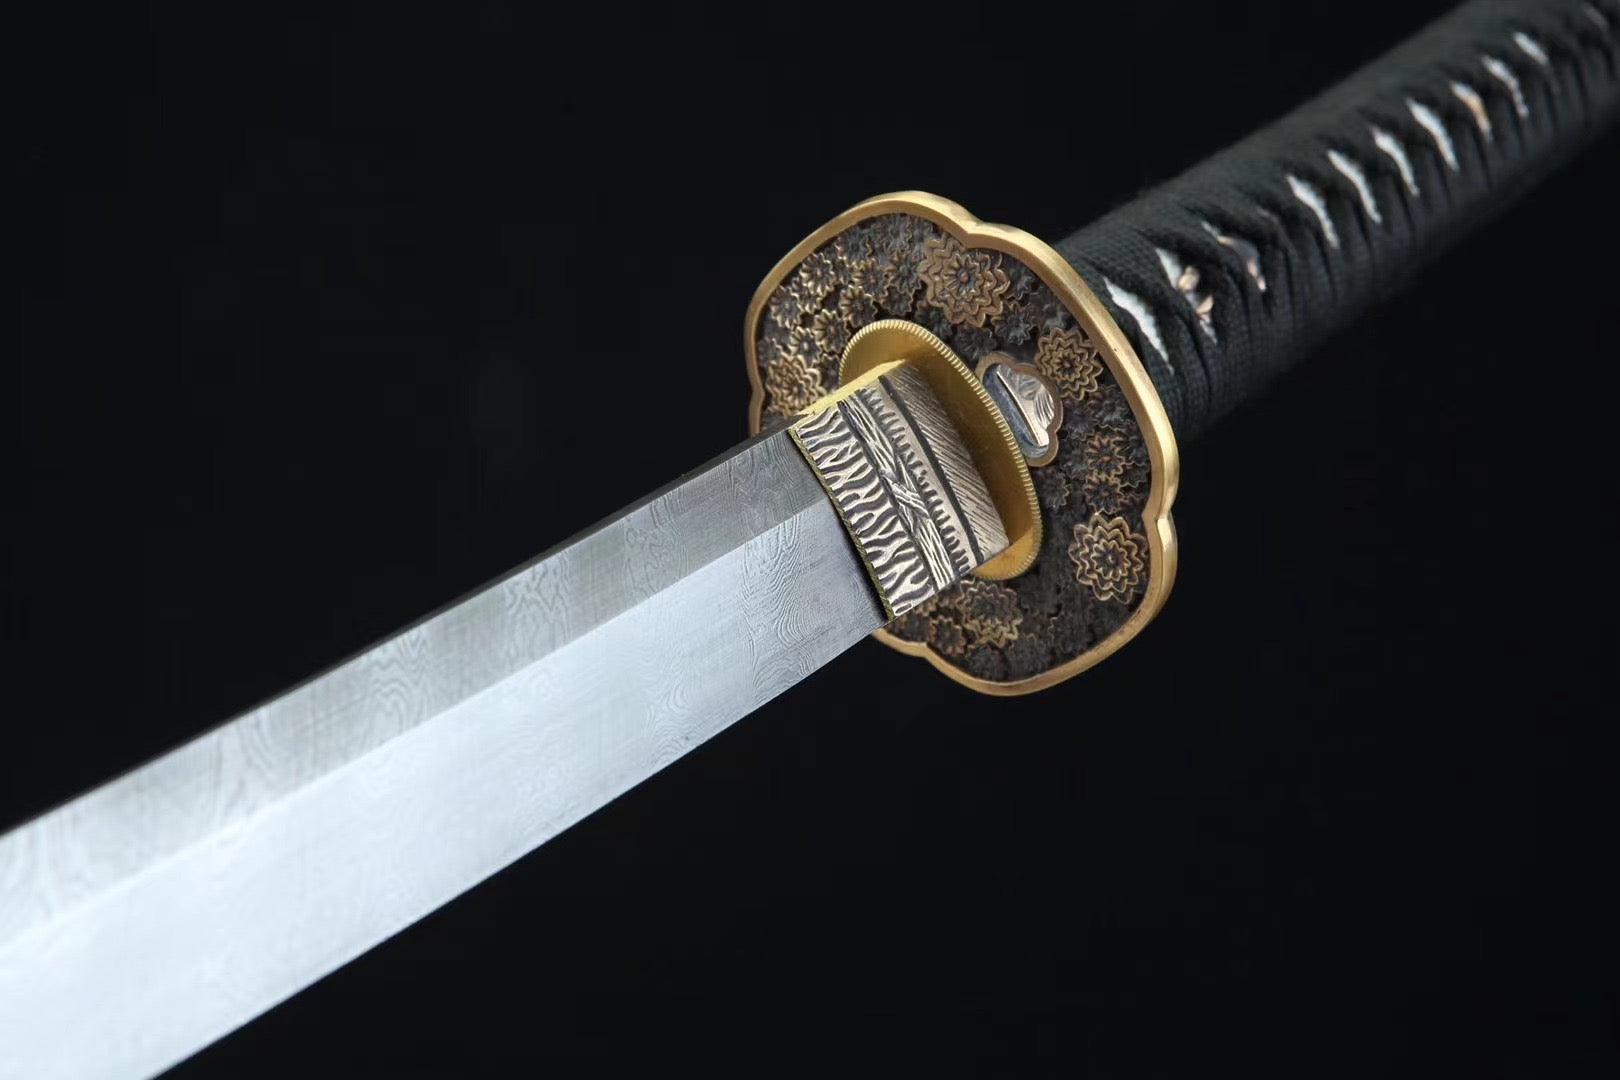 Damascus Steel Flower Tsuba Katana Sword,Real Handmade Japanese Samurai Sword Full Tang